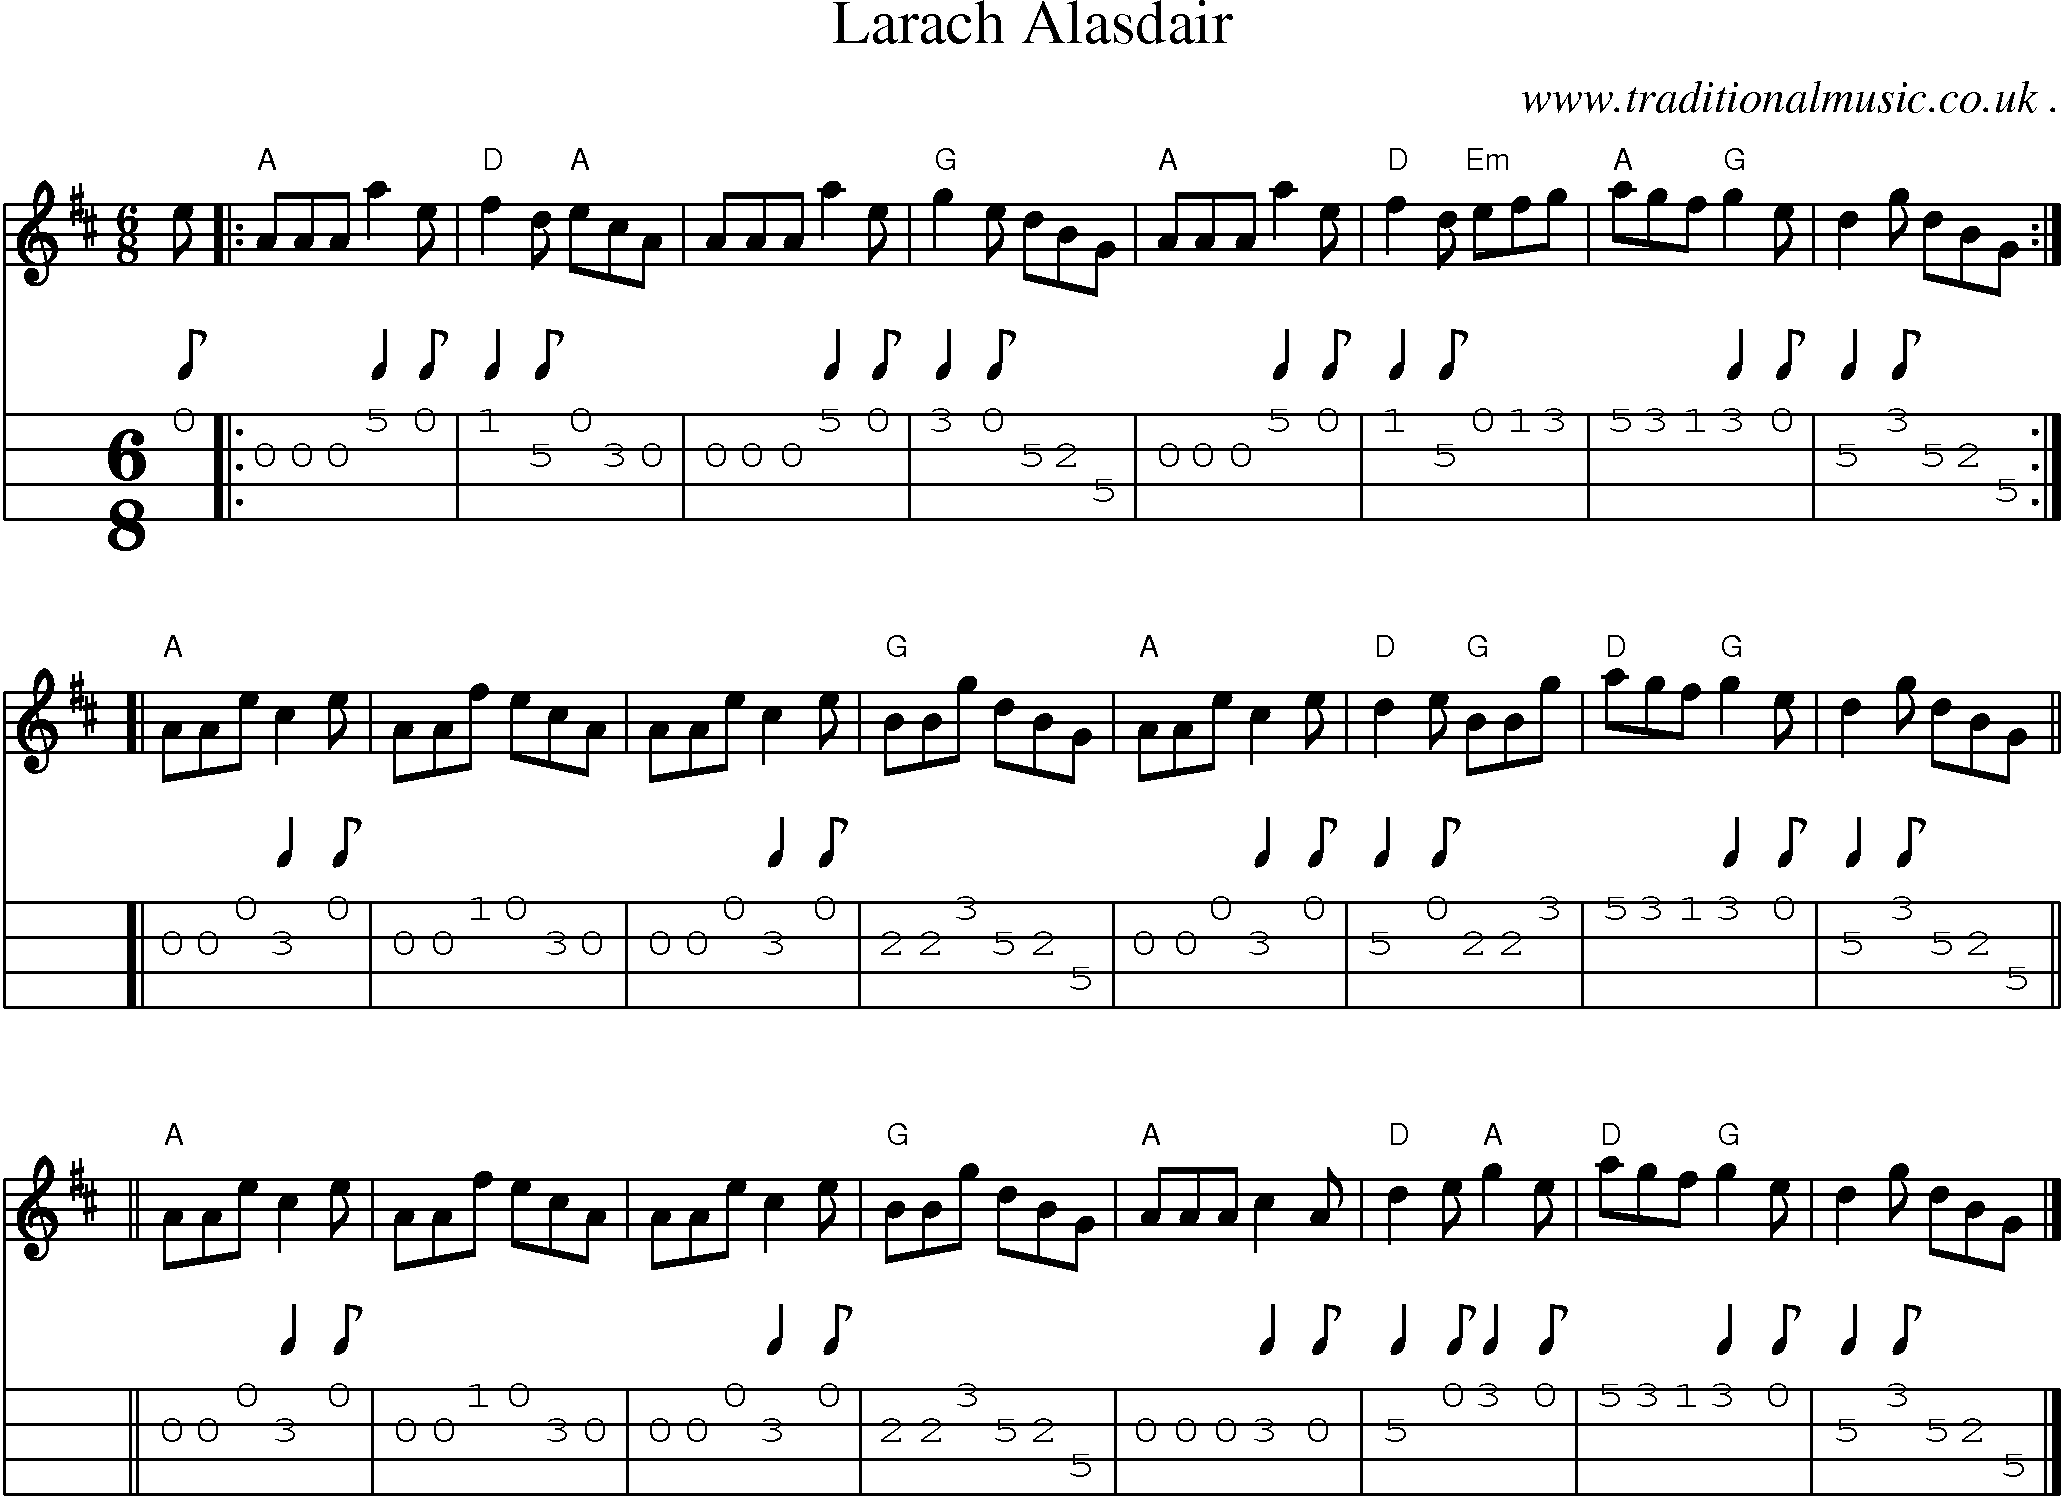 Sheet-music  score, Chords and Mandolin Tabs for Larach Alasdair